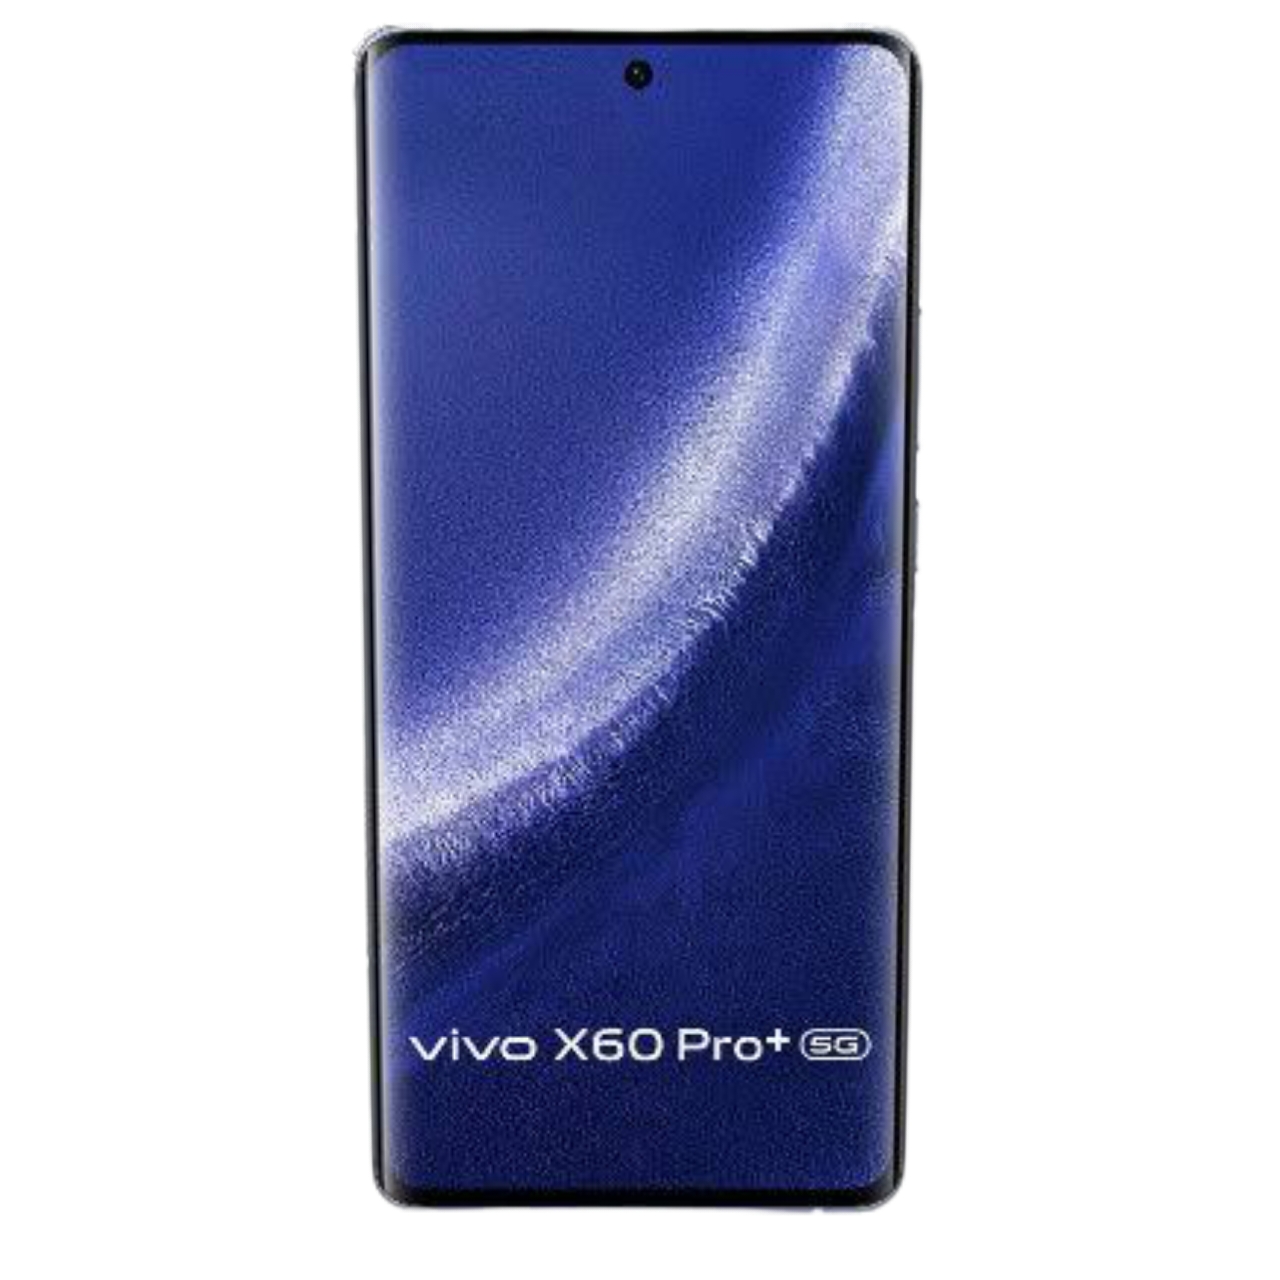 Vivo x60 Pro Plus Price In UAE and Dubai